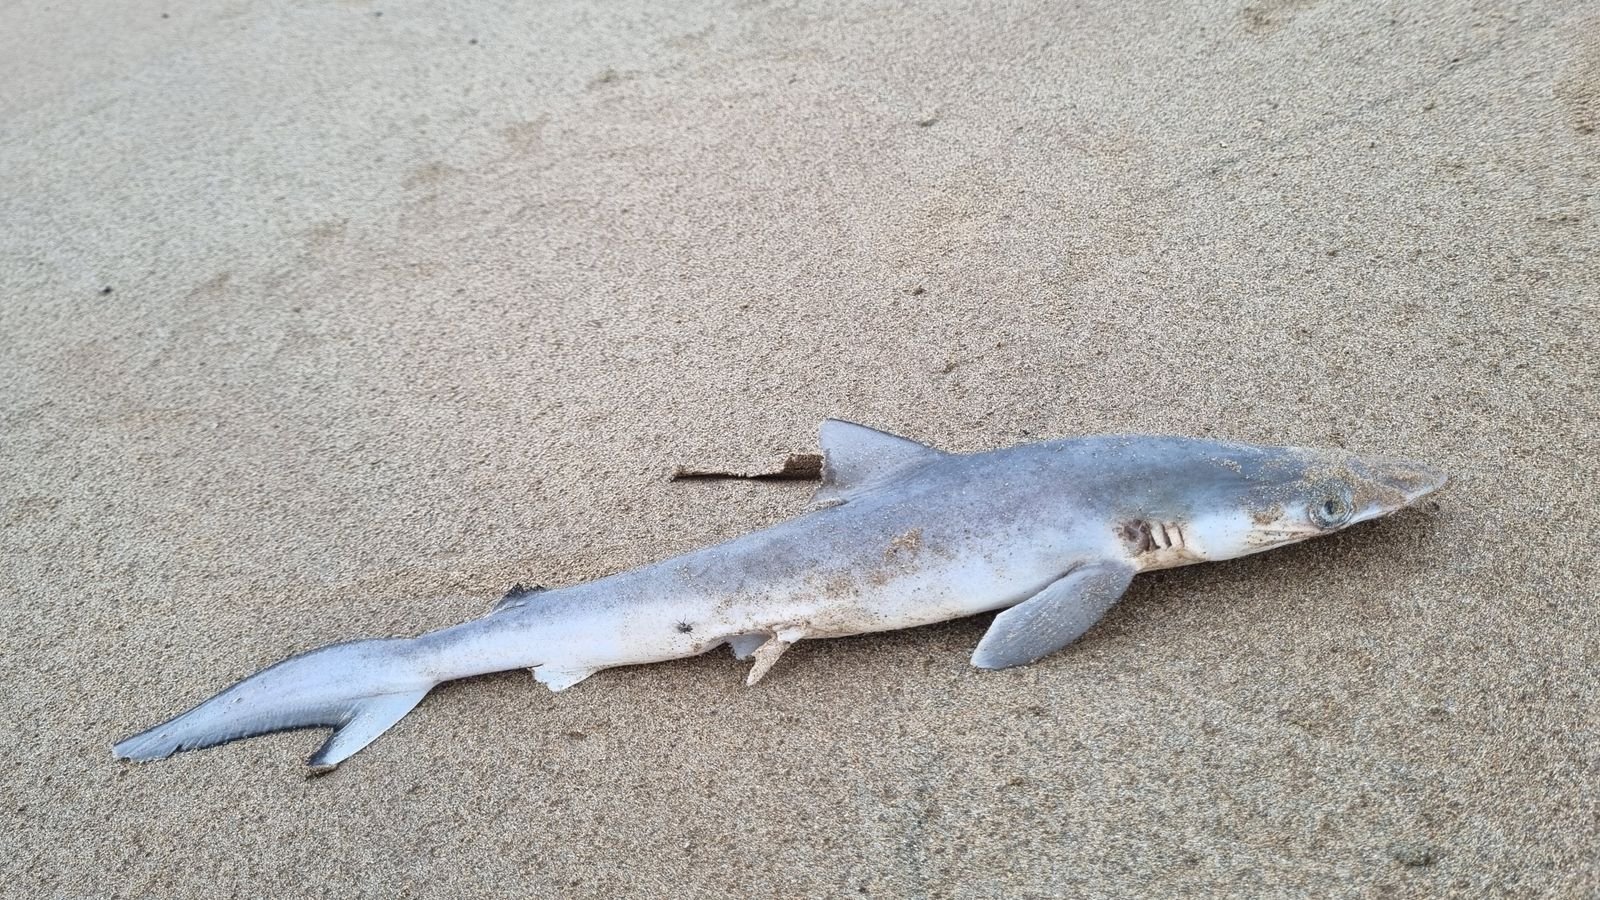 Учени тестваха акули край бреговете на Бразилия и като излязоха резултатите, изпаднаха в шок СНИМКА